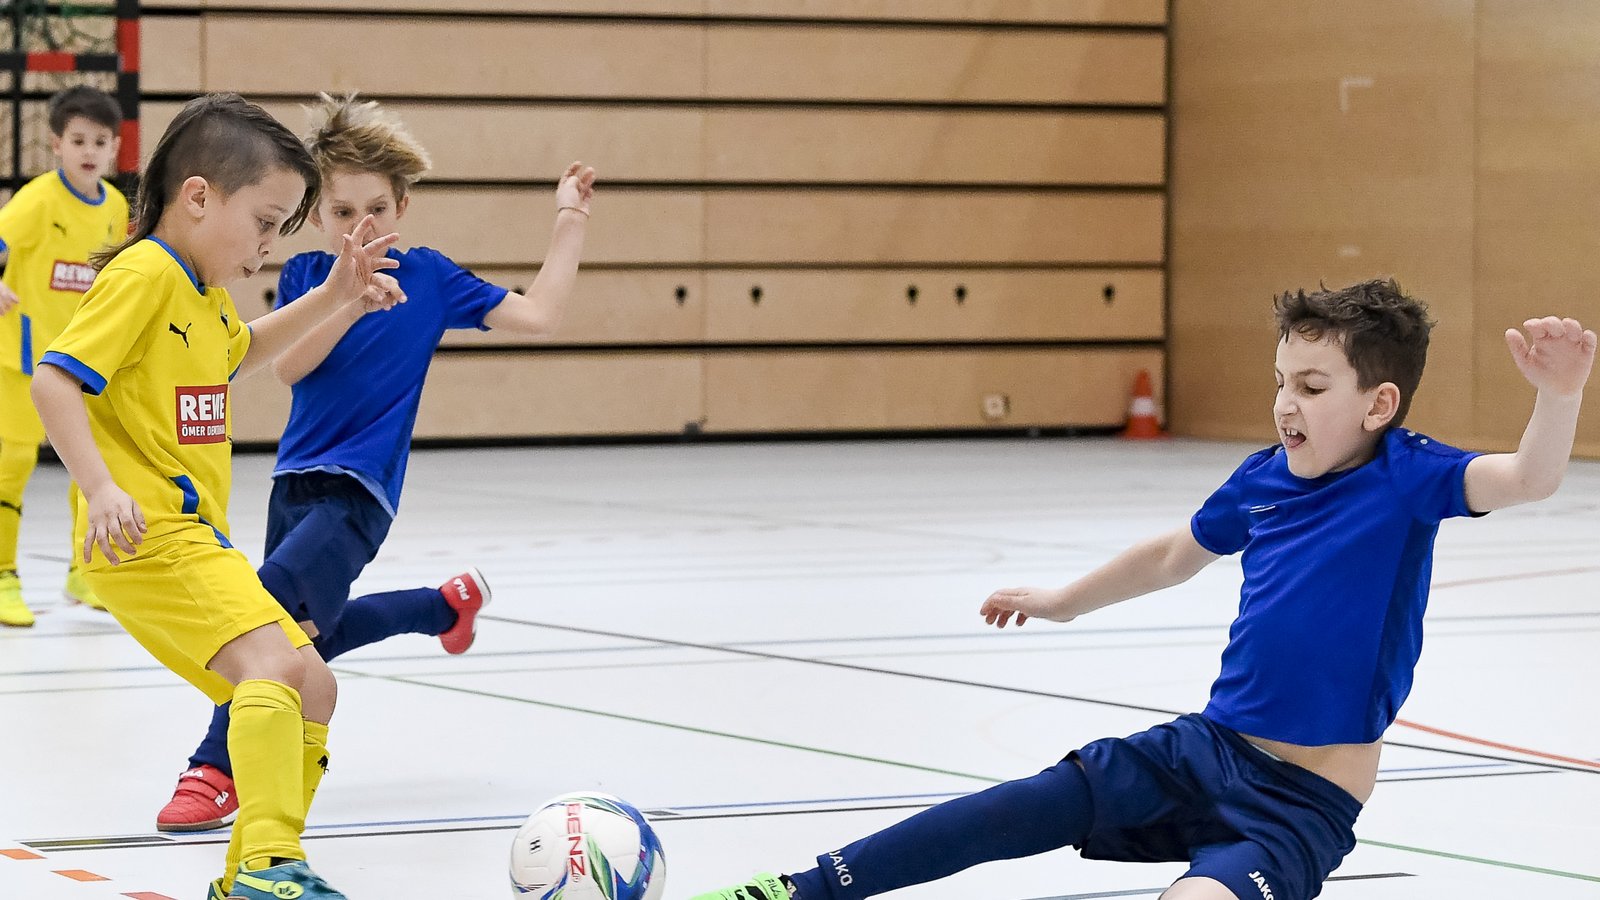 Vollen Einsatz beim F-Jugendspieltag zeigen die Spieler aus Kornwestheim (gelb) und Illingen (blau) im direkten Duell. Foto: Leitner